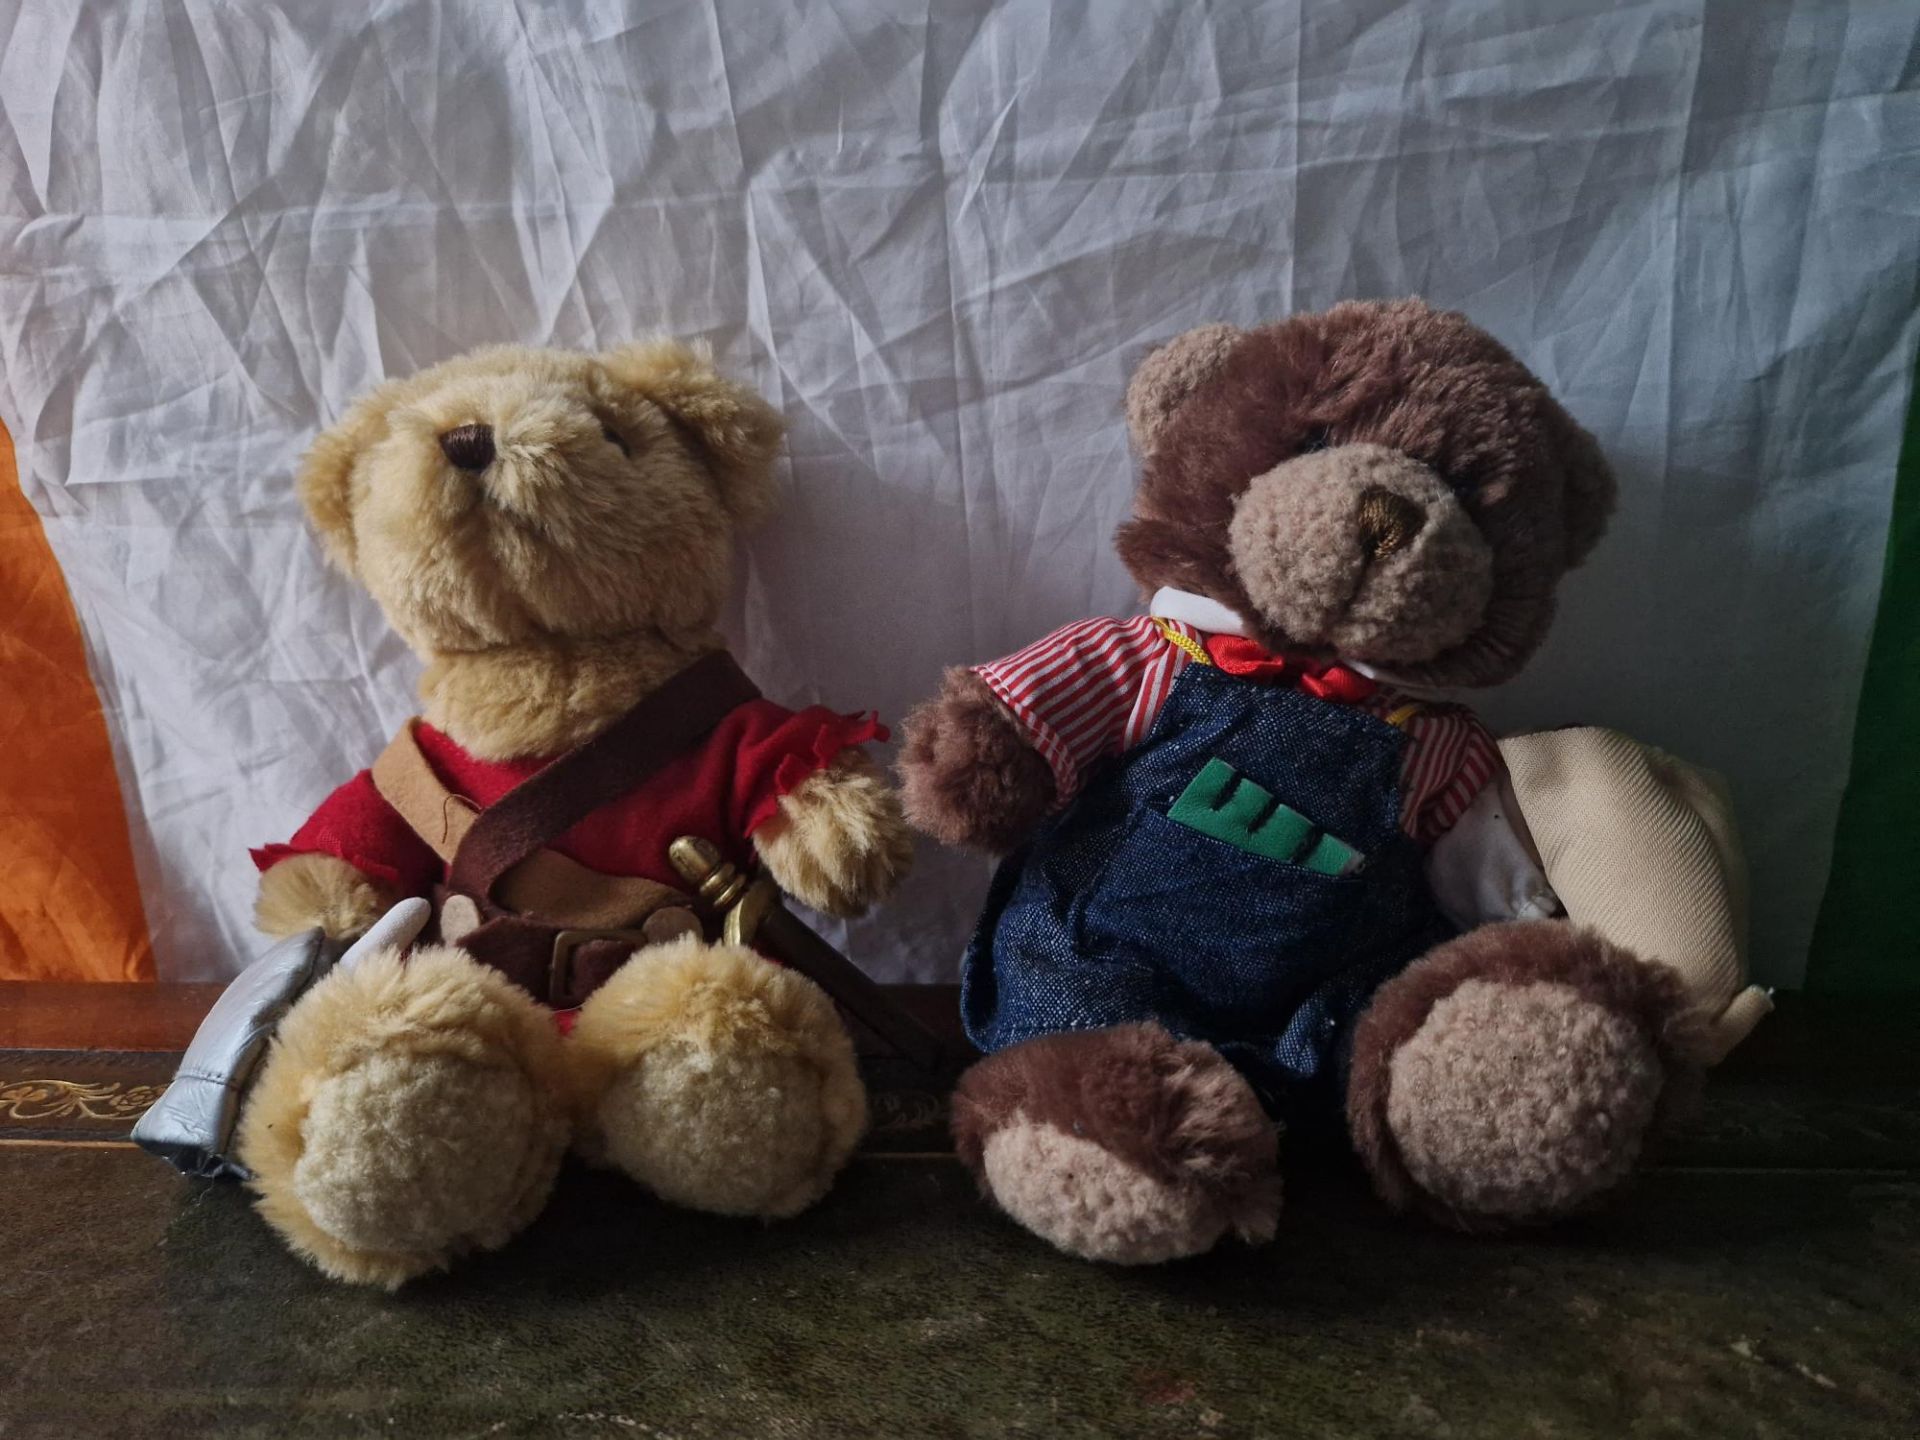 2 Teddys - The teddy bear collection